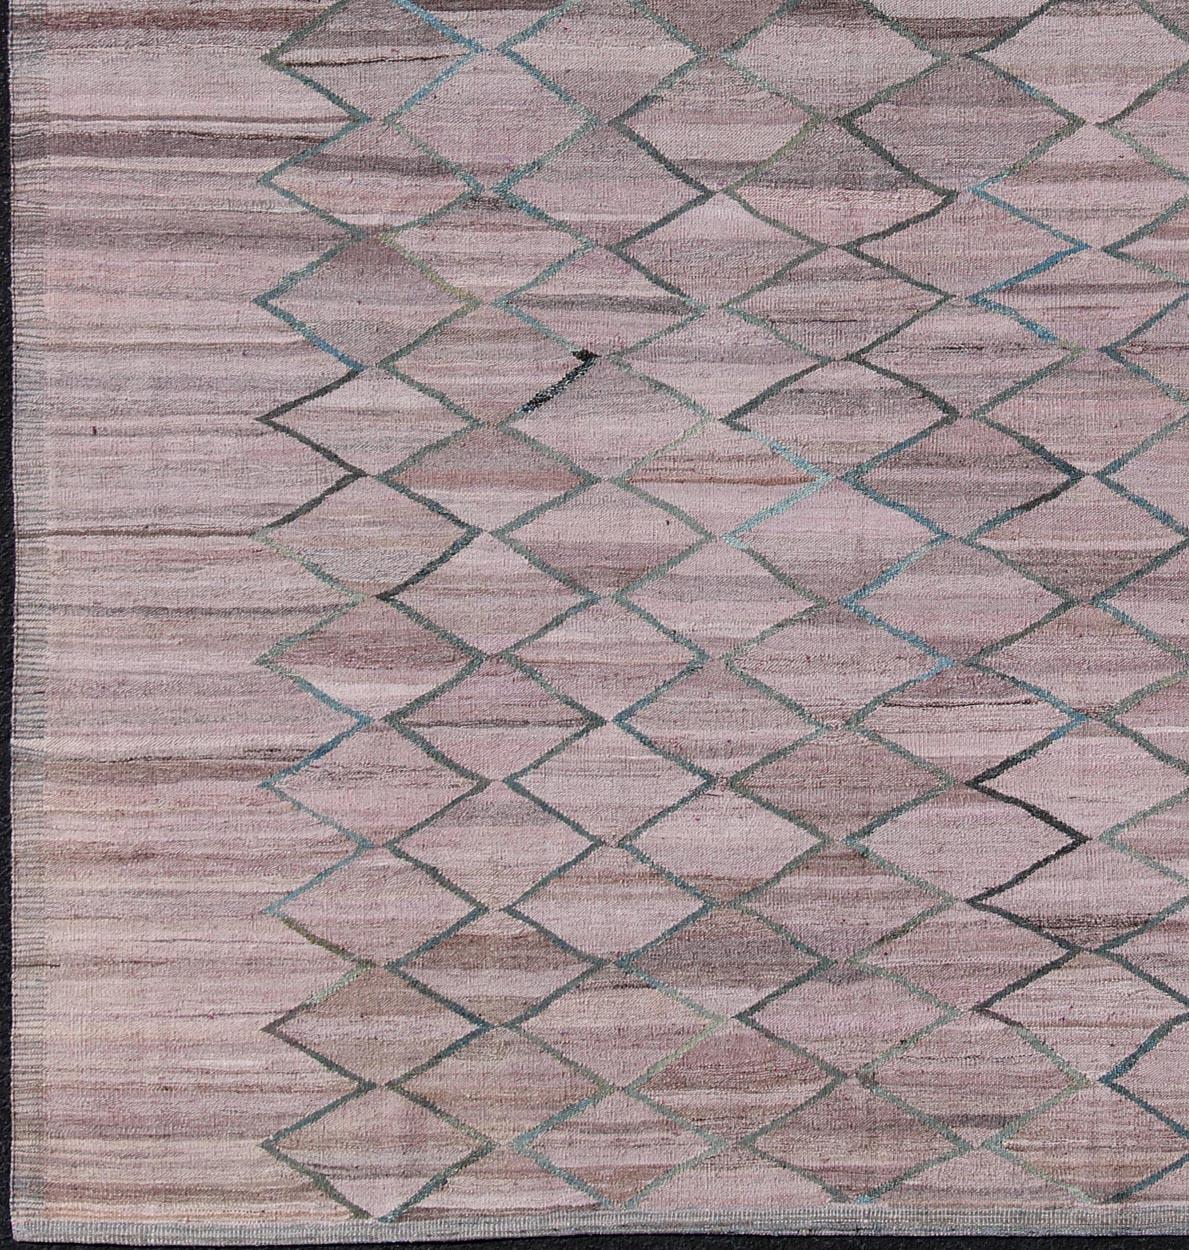 Moderner Kelim aus Afghanistan mit feiner Wolle. Keivan Woven Arts Teppich  AFG-27580. Dieses helle, lavendelfarbene und rosafarbene Stück weist ein sich wiederholendes Rautenmuster auf, das sich sowohl für moderne als auch für klassische Innenräume